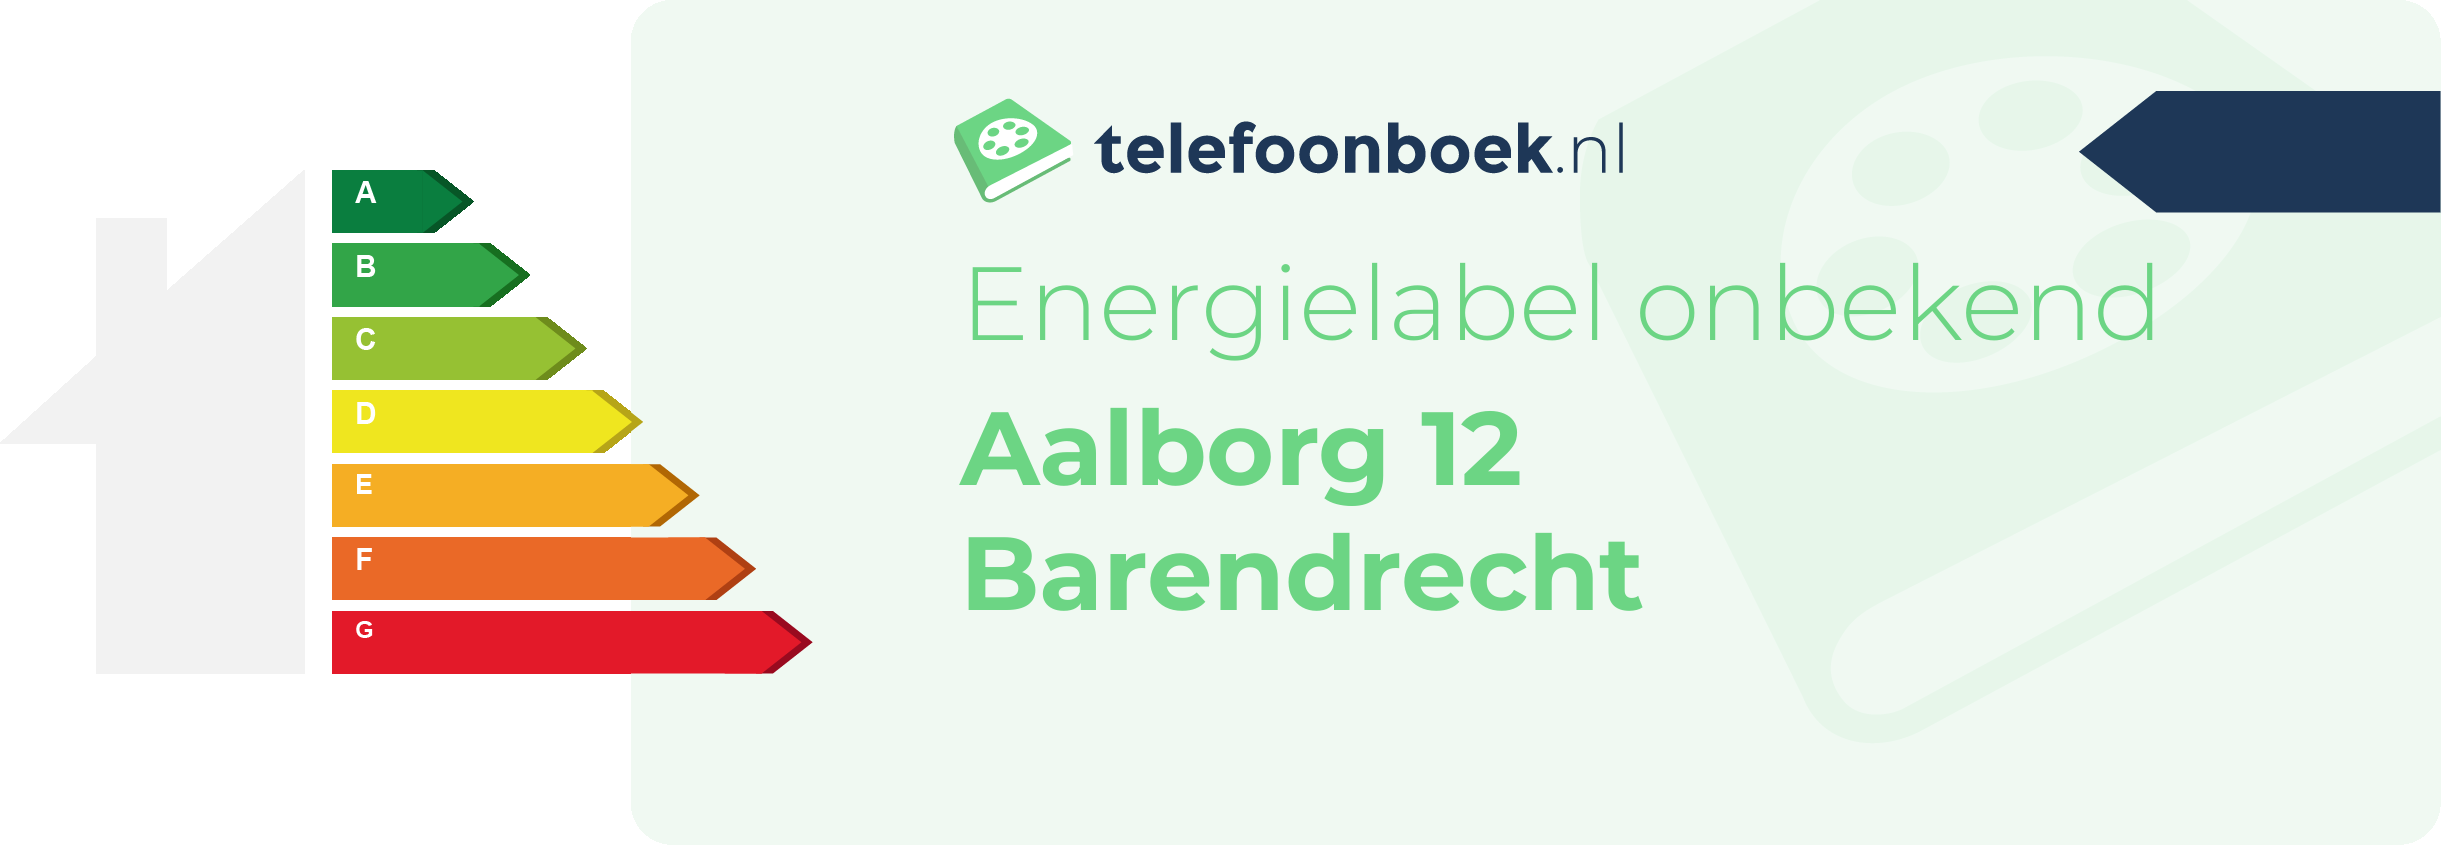 Energielabel Aalborg 12 Barendrecht